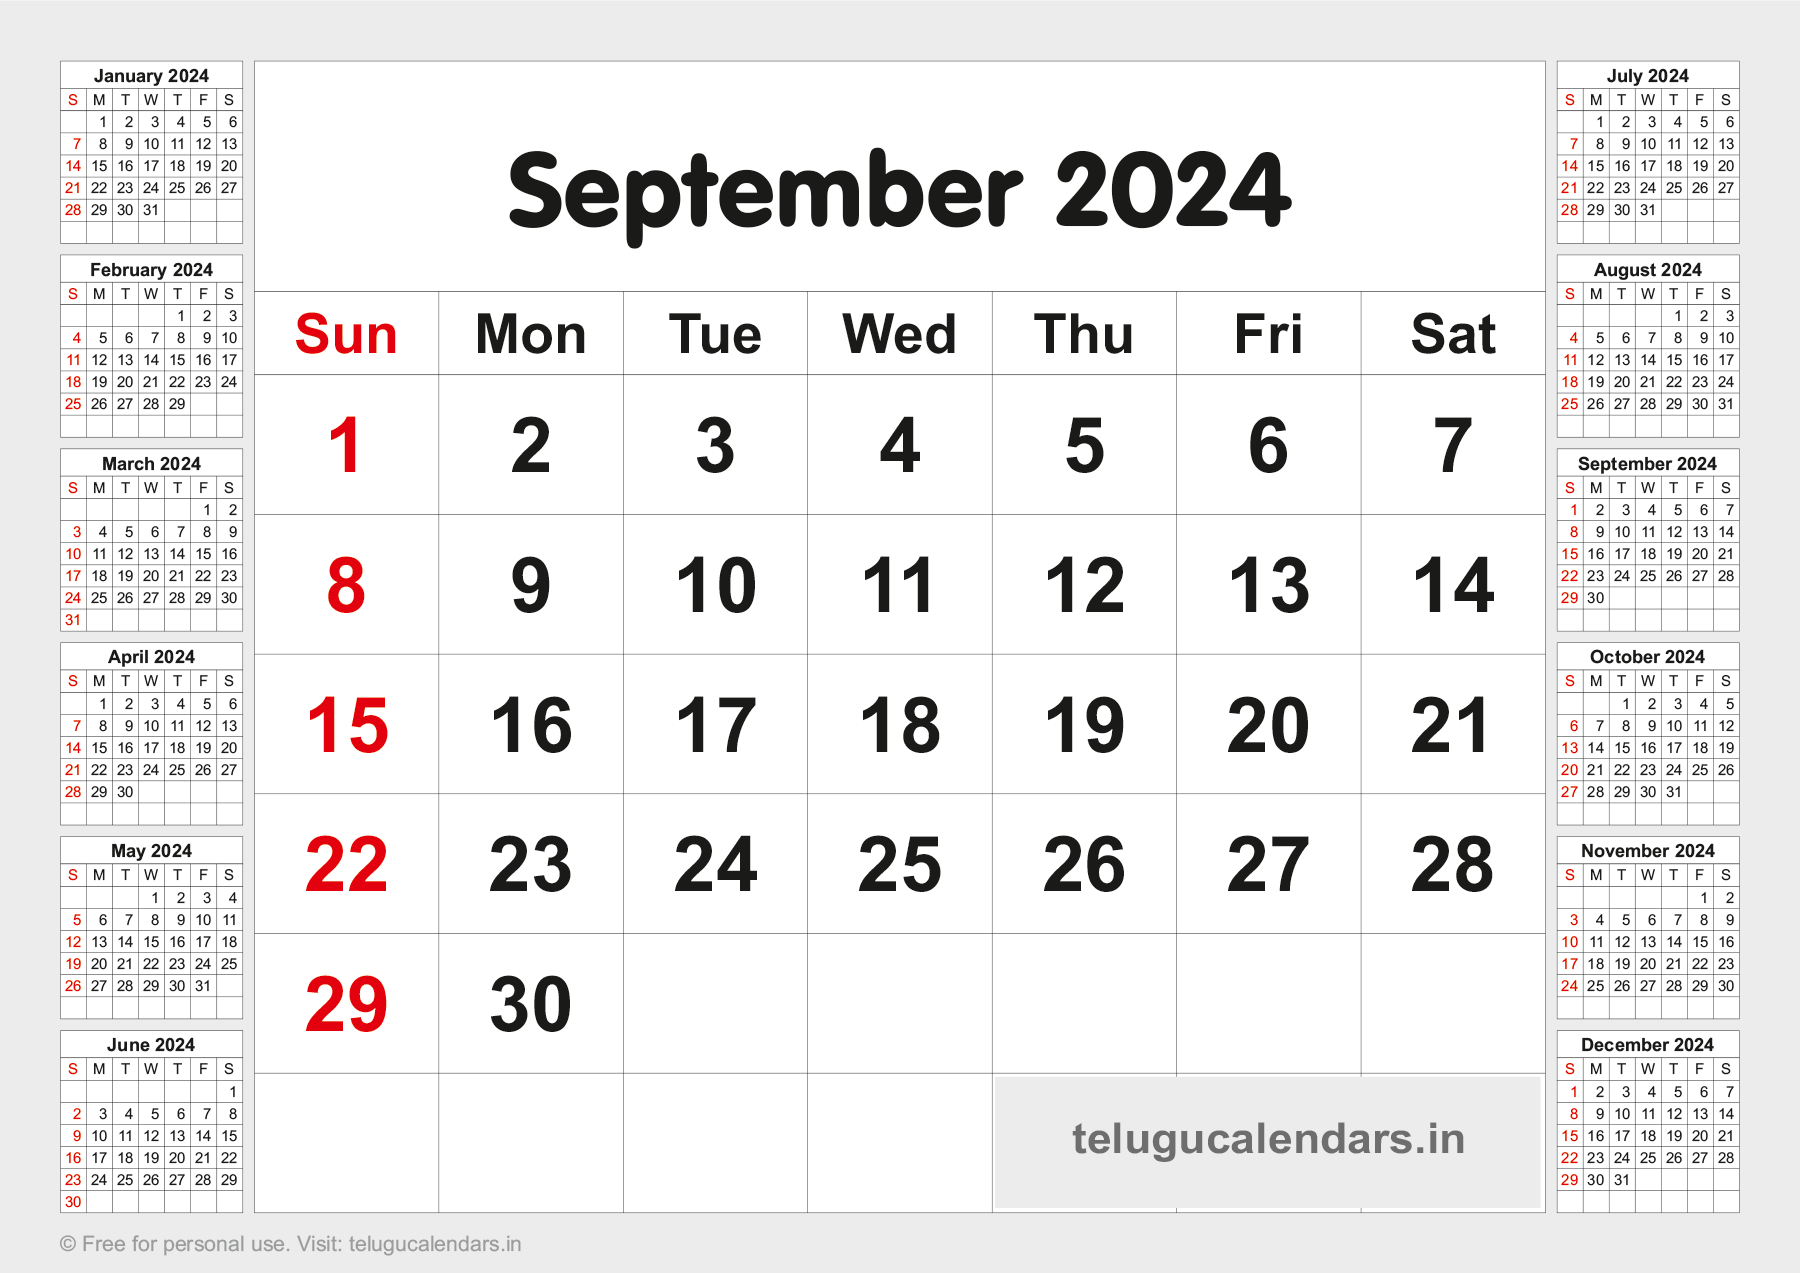 Telugu Blank Calendar 2024 September 2023 Telugu Calendar PDF